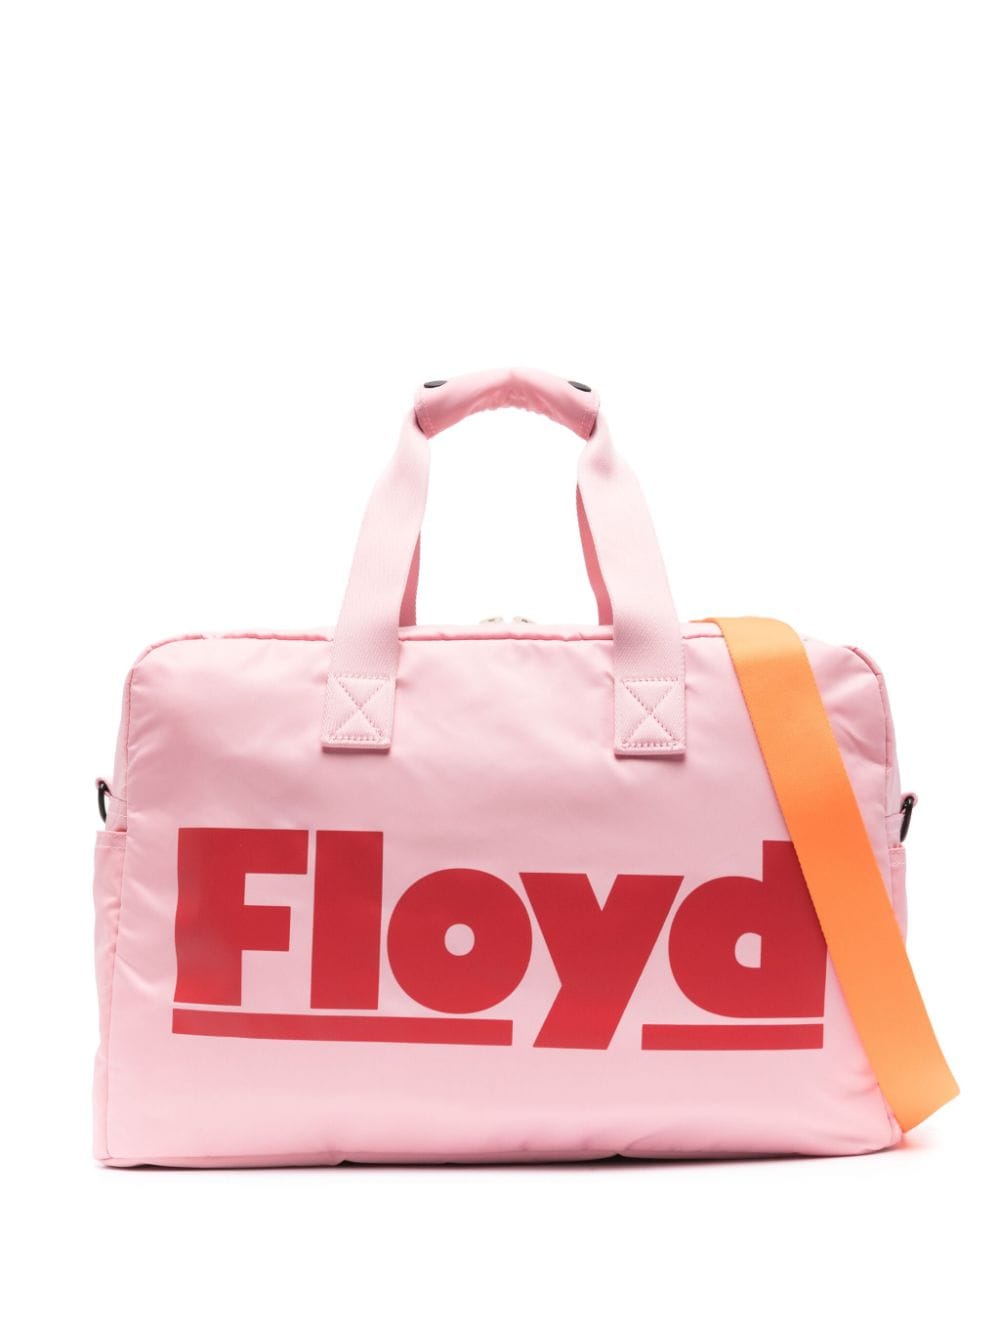 Floyd Floyd Weekender zip-up holdall